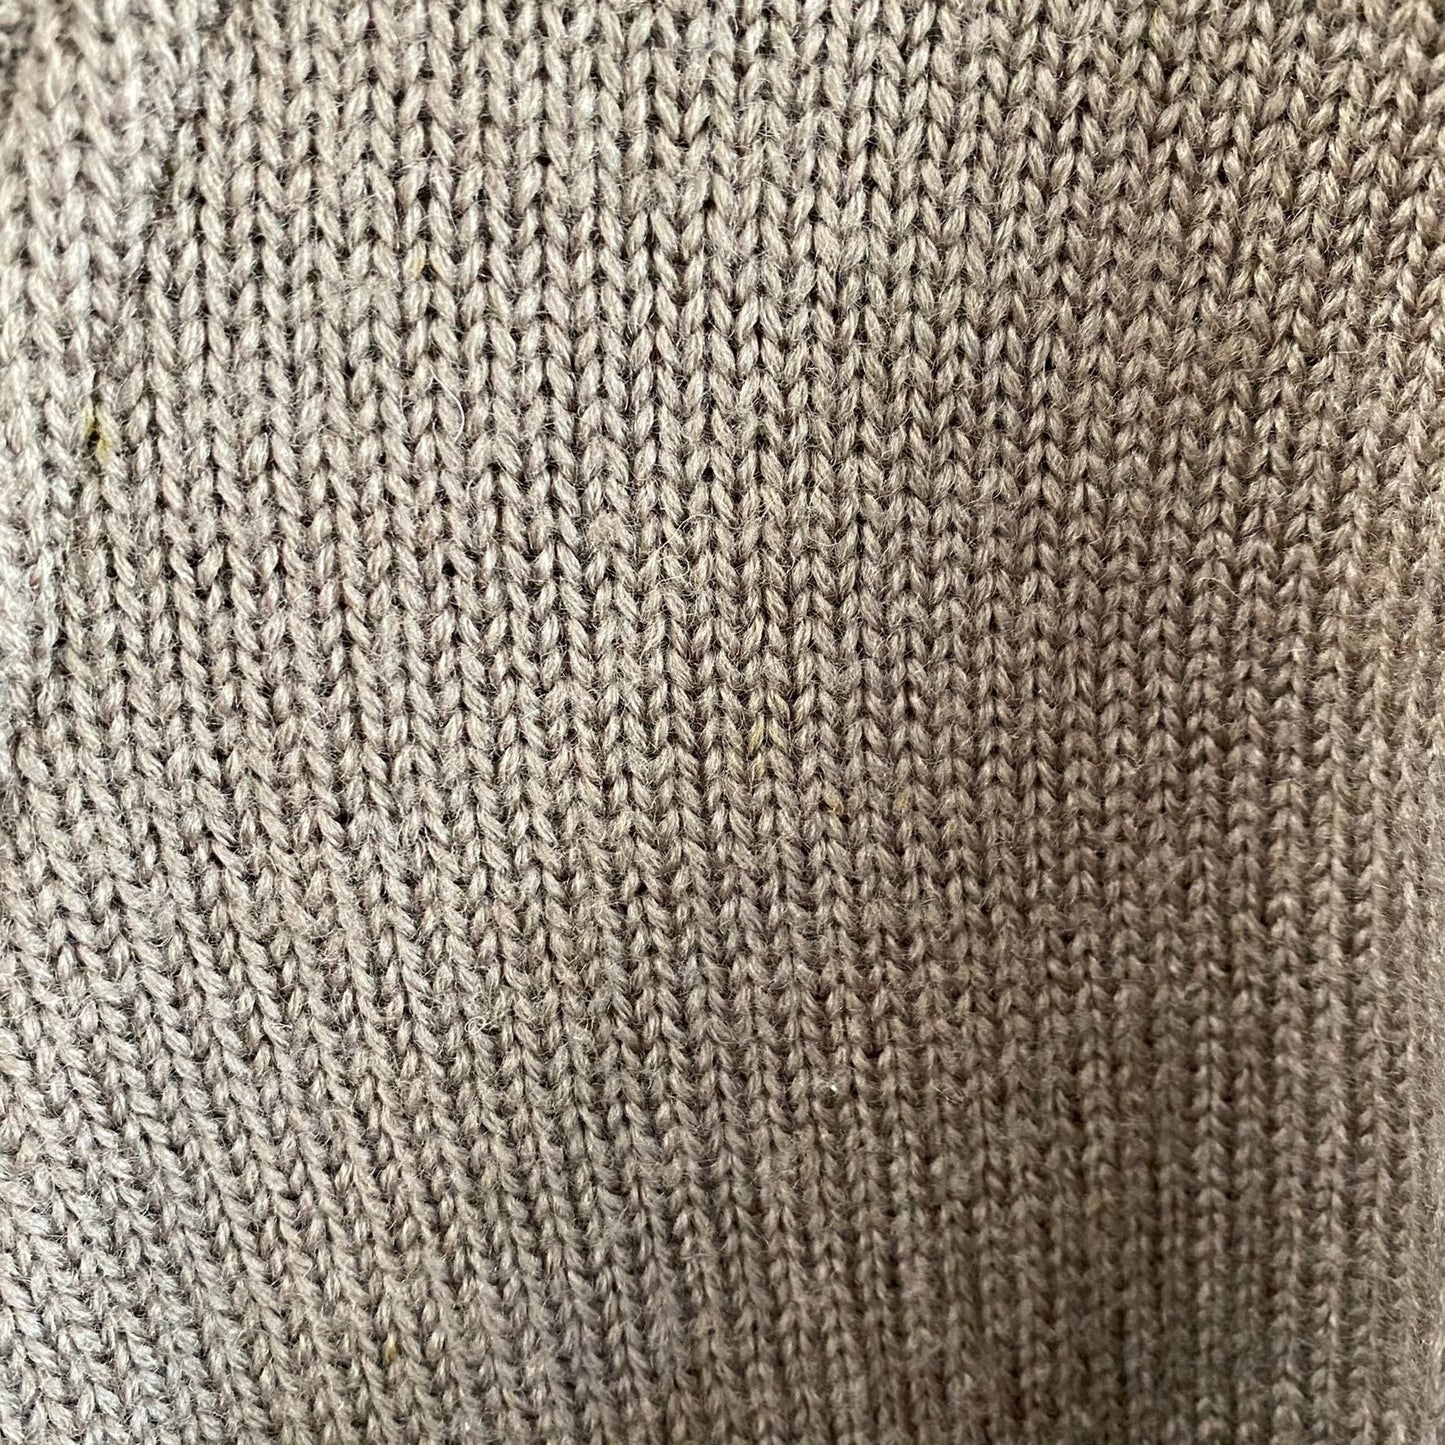 Virgin Wool Shawl Collar Sweater